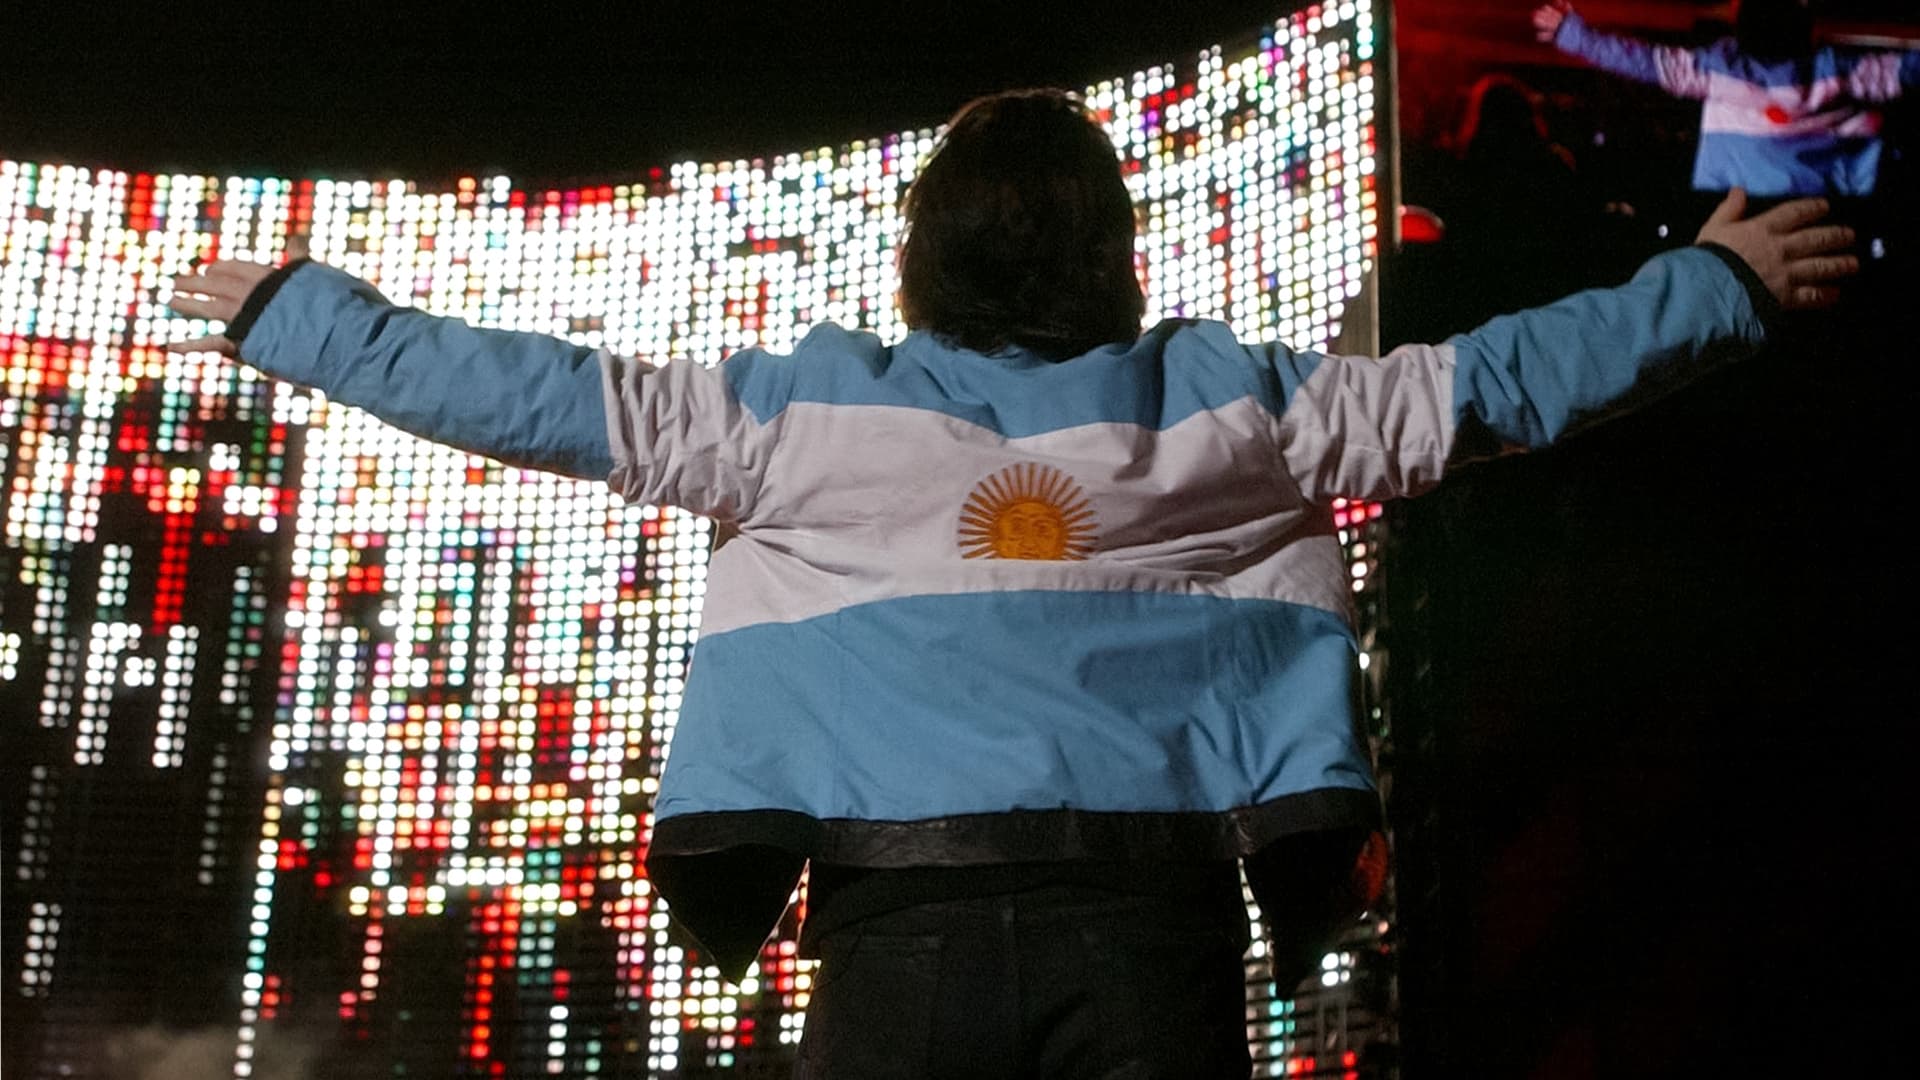 U2: Vertigo Tour Live at River Plate Stadium